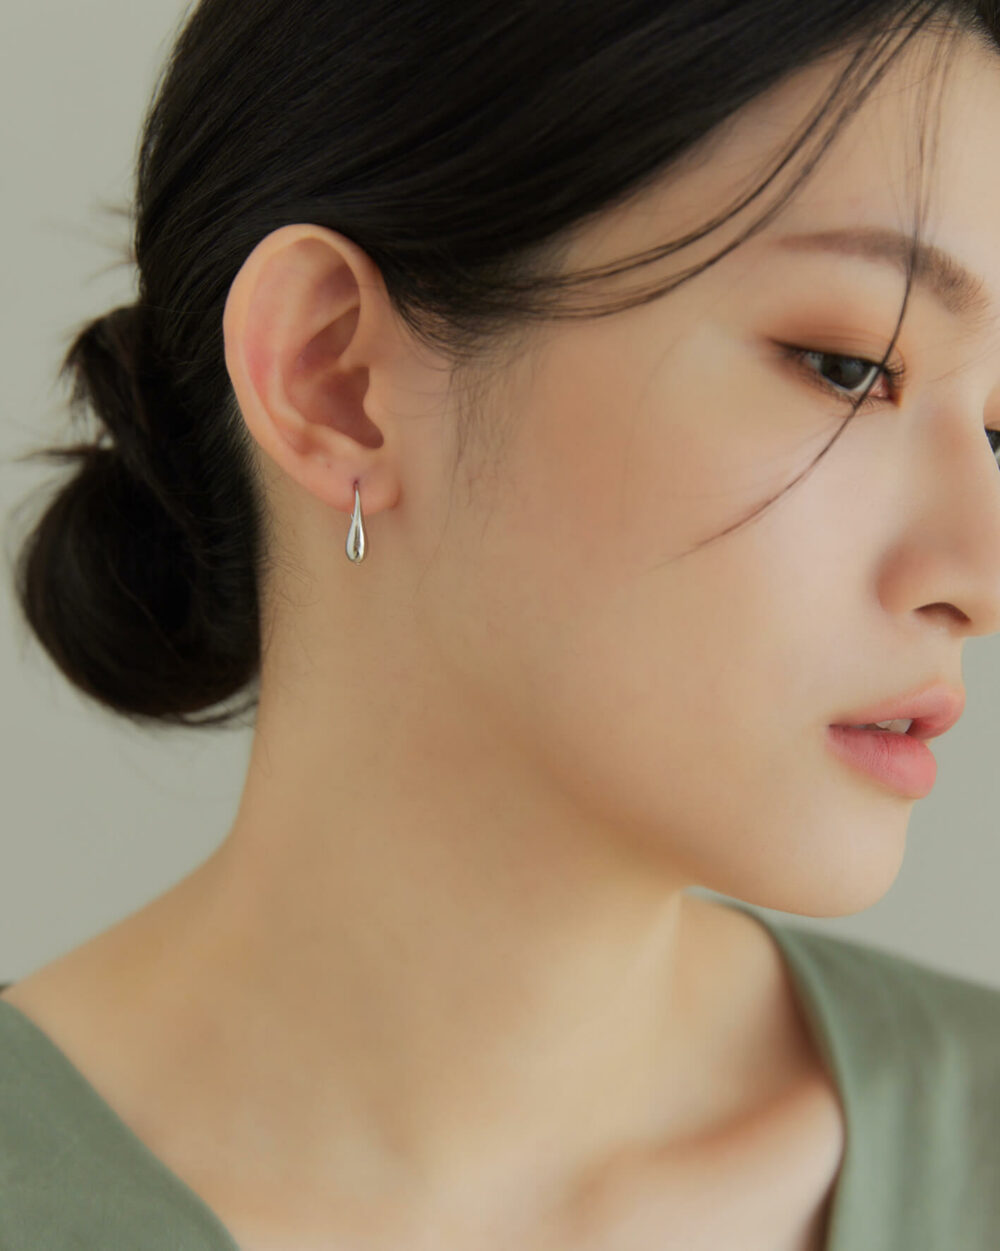 Eco安珂,韓國飾品,韓國耳環,耳針式耳環,C圈耳環,氣質耳環,後勾耳環